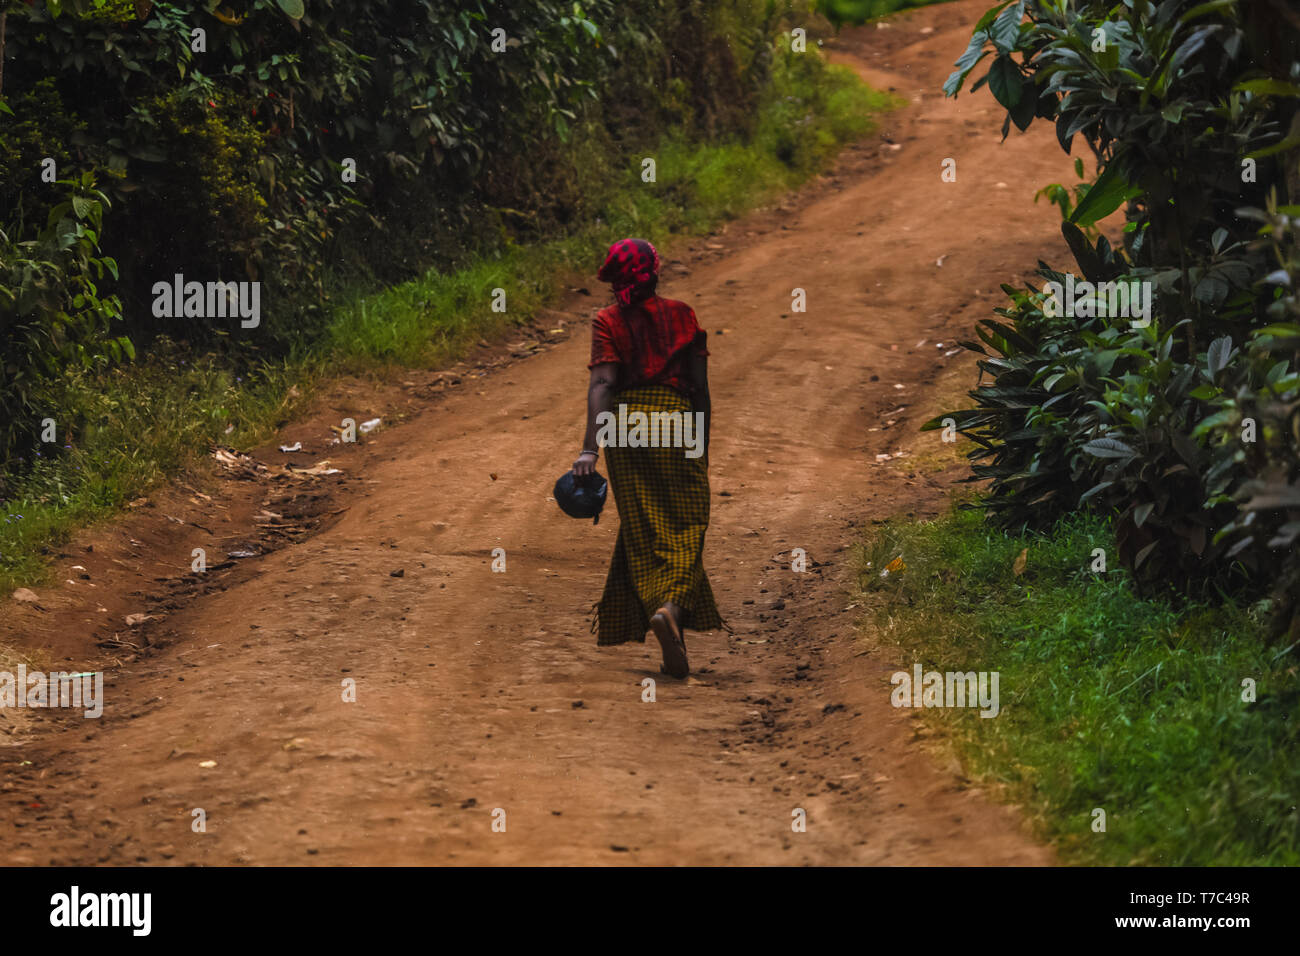 Frau zu Fuß auf der Straße durch, halten sie in ihrer Hand eine Handtasche. Das Tragen der roten Schal auf dem Kopf, Gelb langer Rock. Wilde Natur außerhalb der Stadt, grün Stockfoto